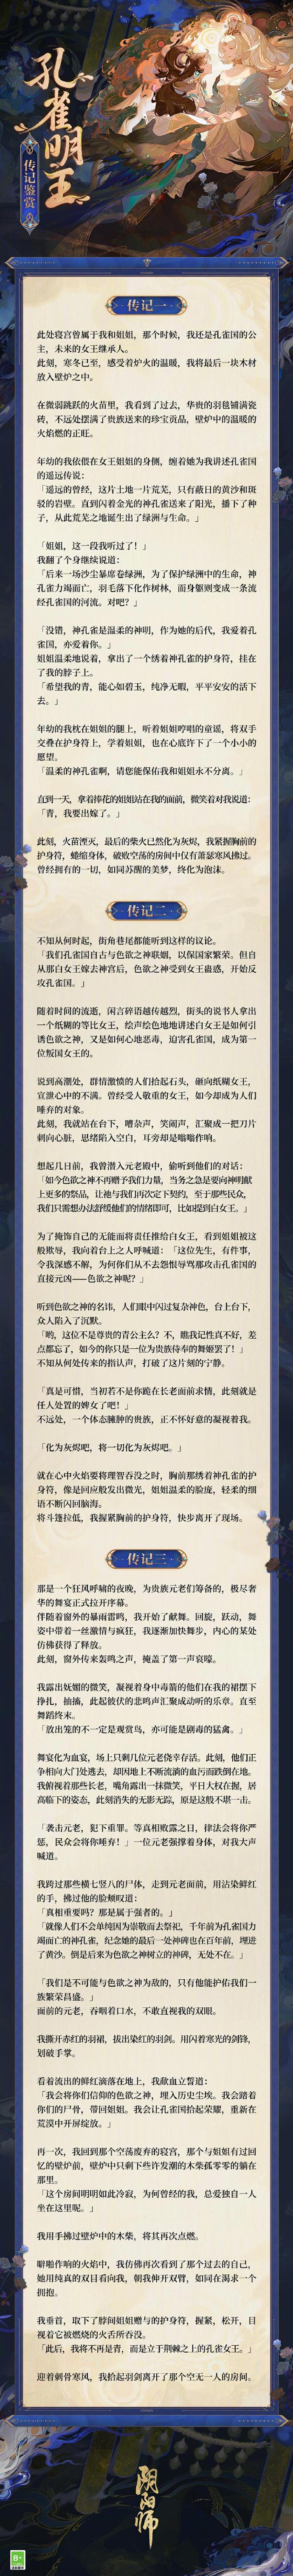 《阴阳师》新SSR「孔雀明王」将于5月24日上线